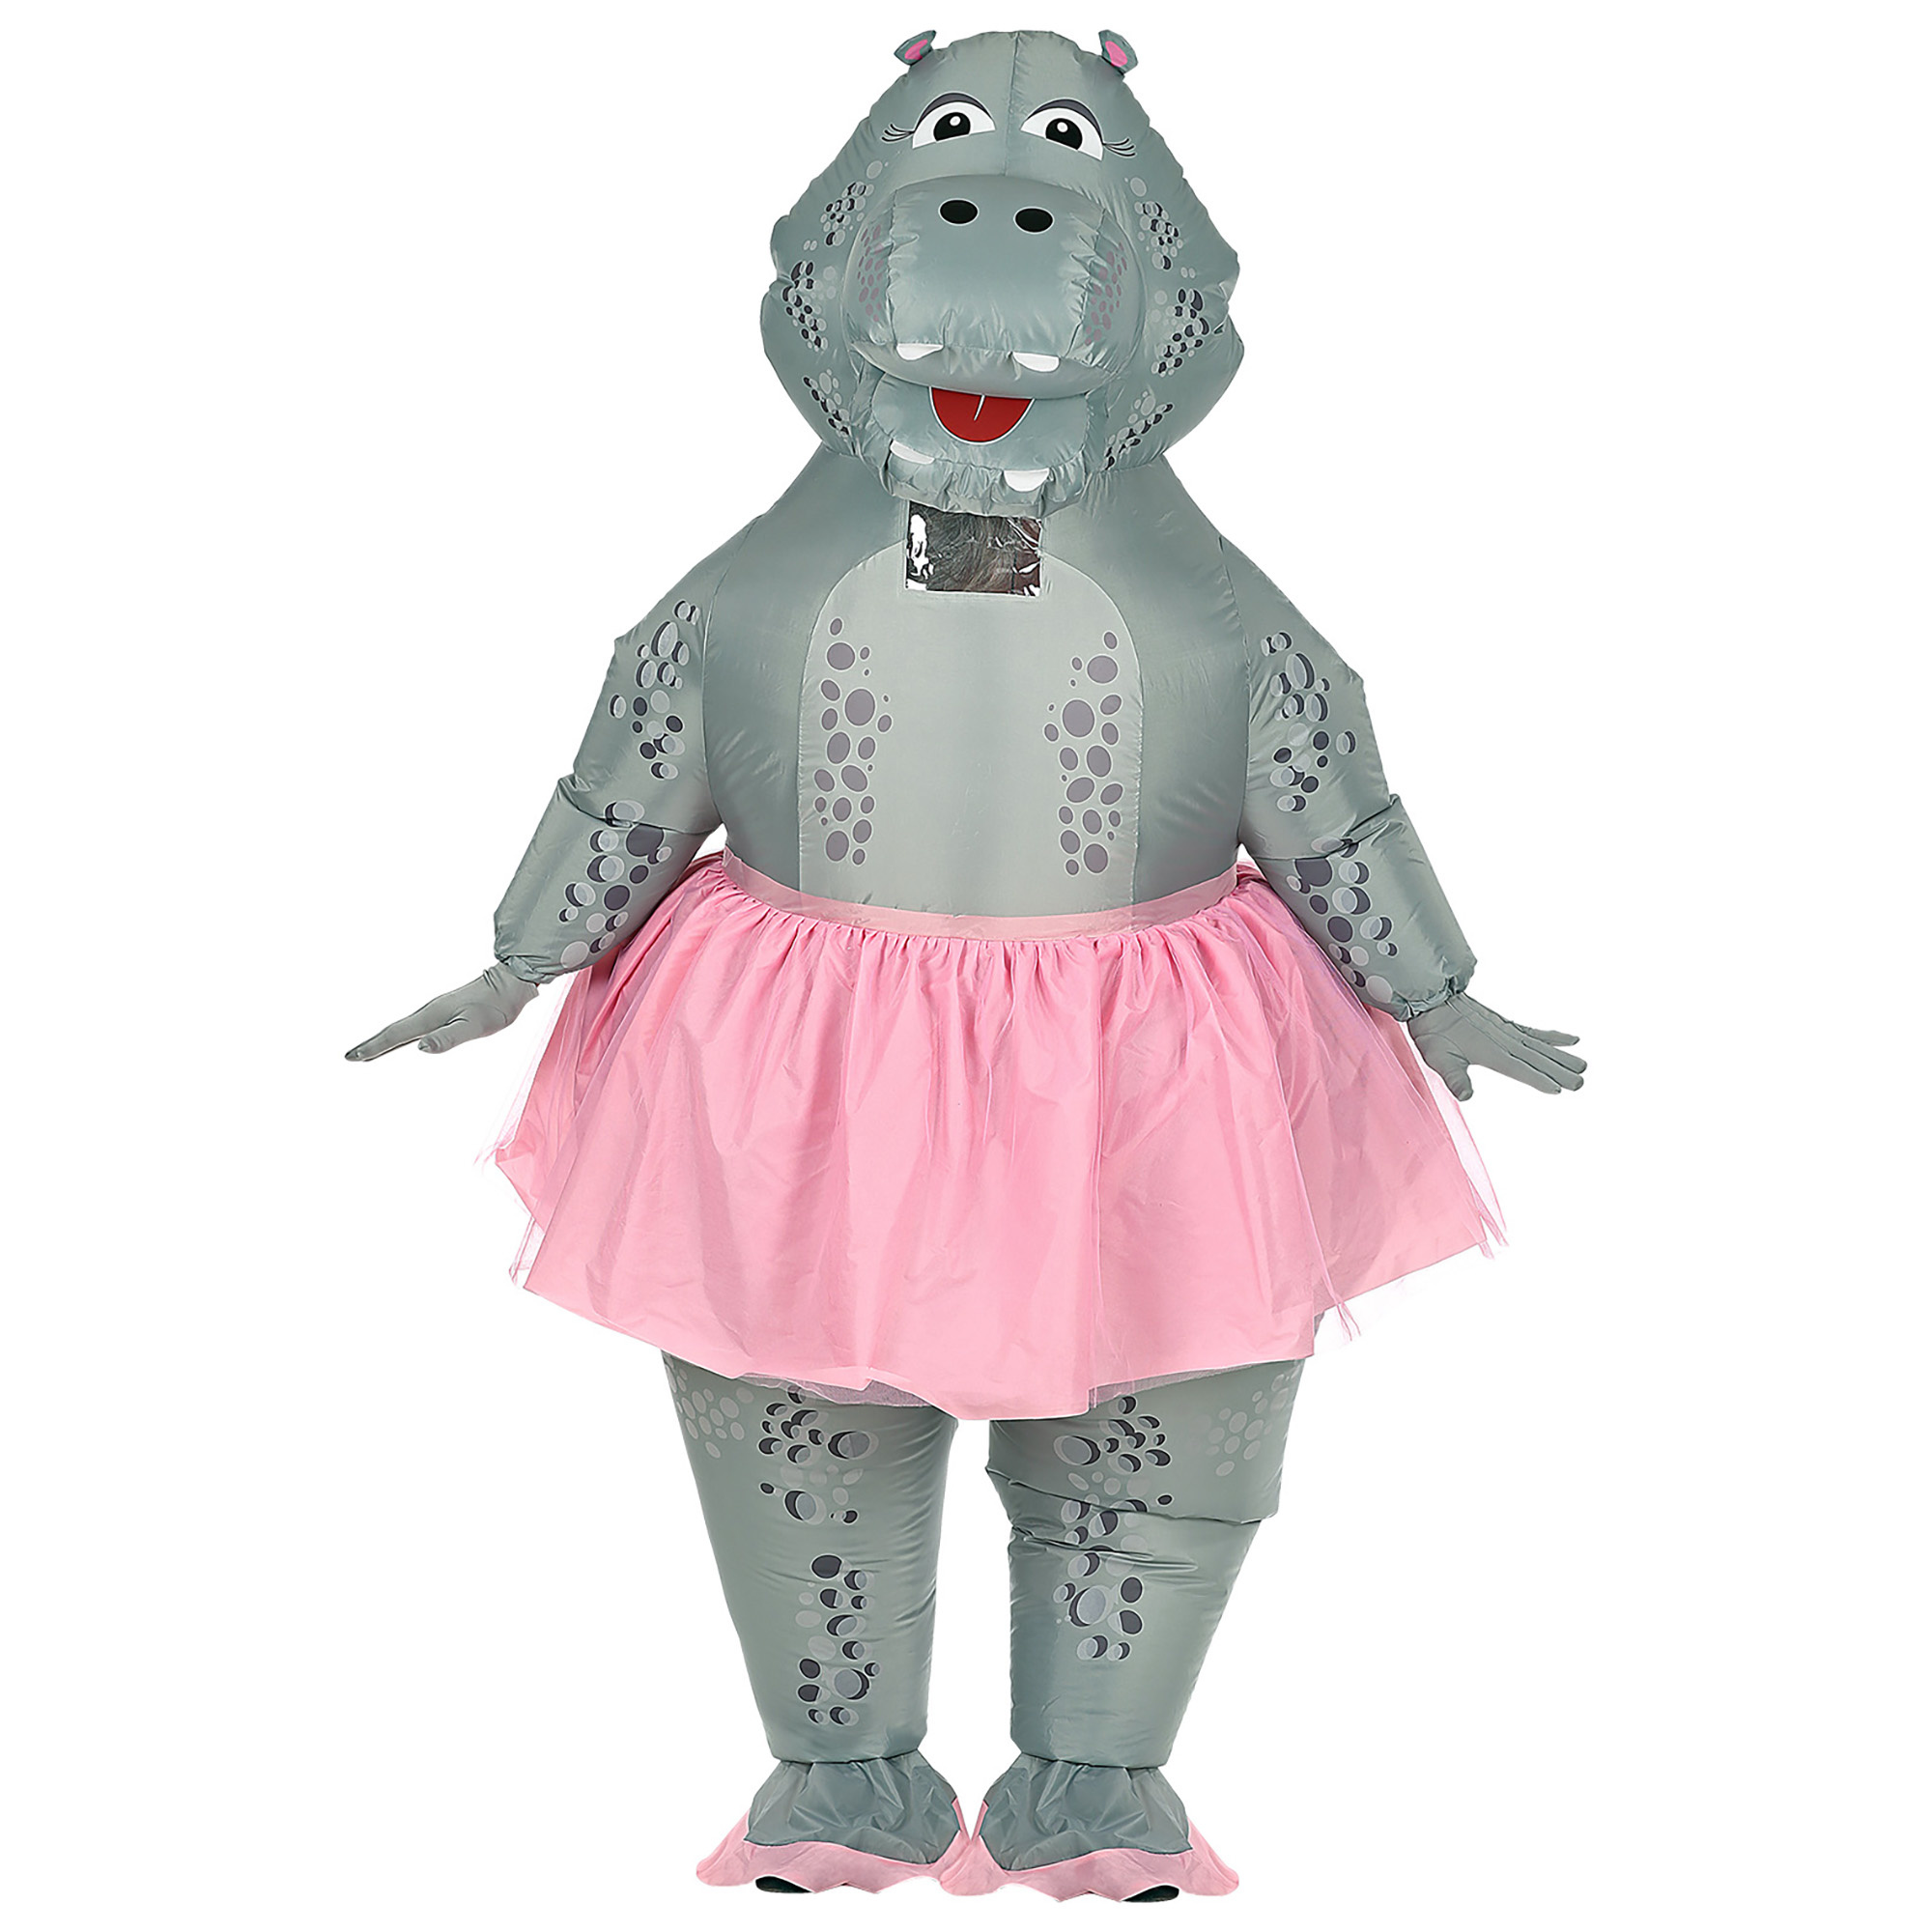 WIDMANN - Nijlpaard ballerina kostuum voor volwassenen - Volwassenen kostuums